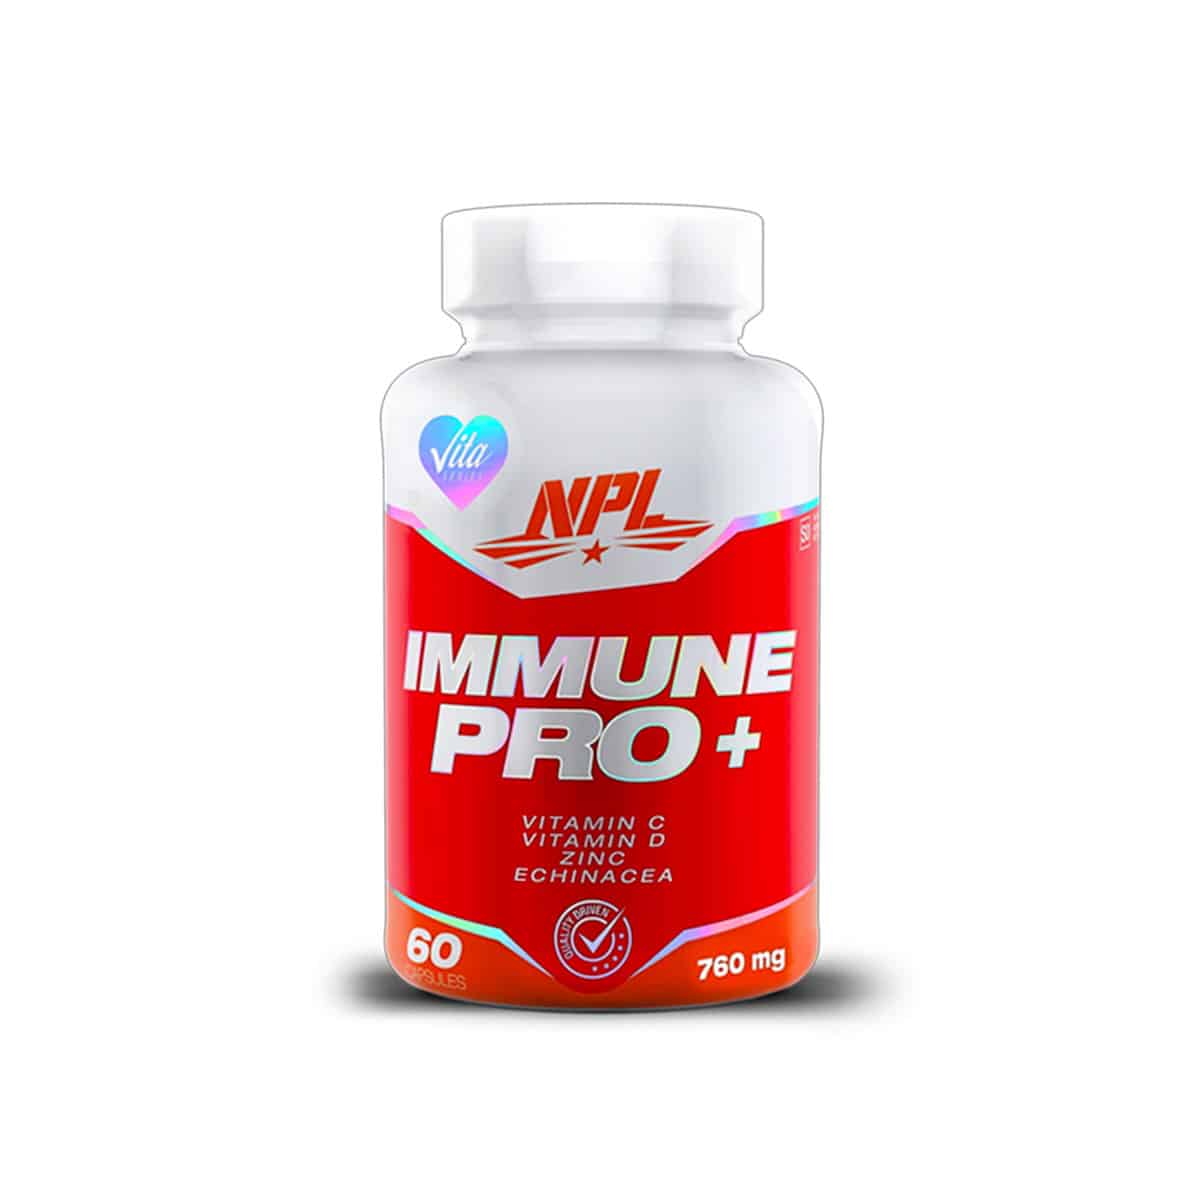 NPL Immune Pro Plus - 60s